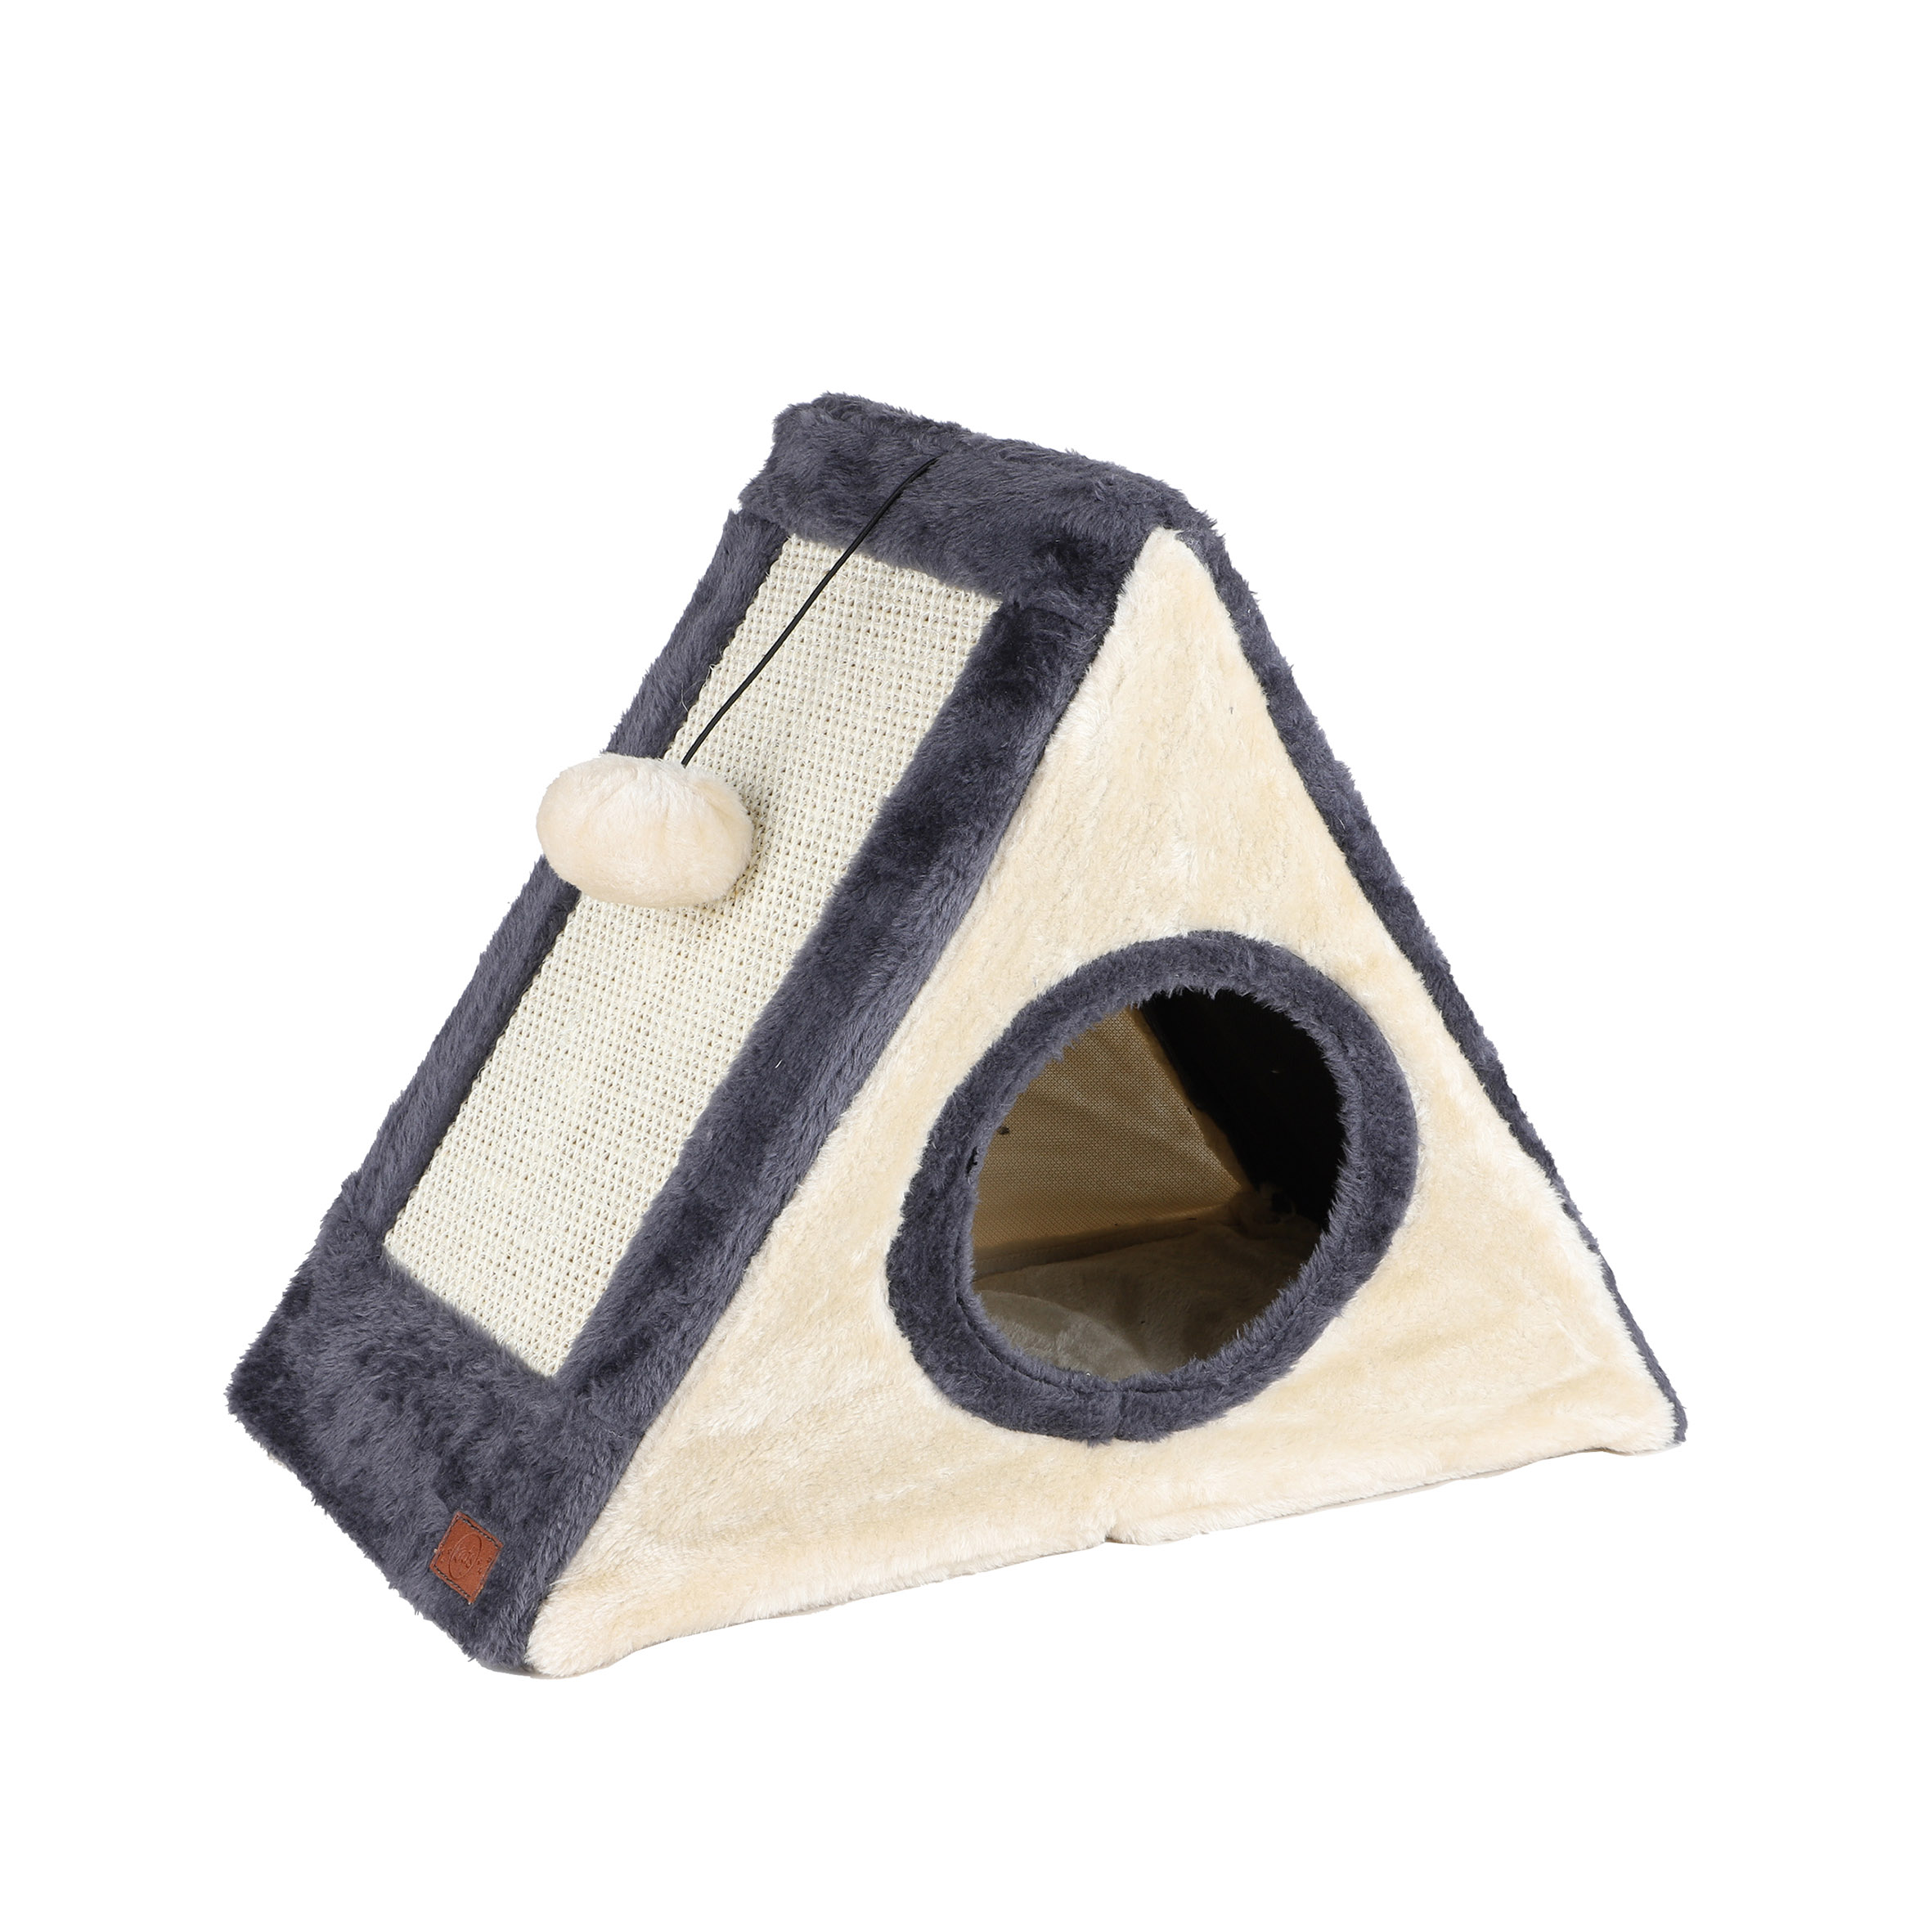 Katzenhaus mit Kratzbrettern aus Sisal - 42 x 35 cm - Katzenhöhle mit Spielball